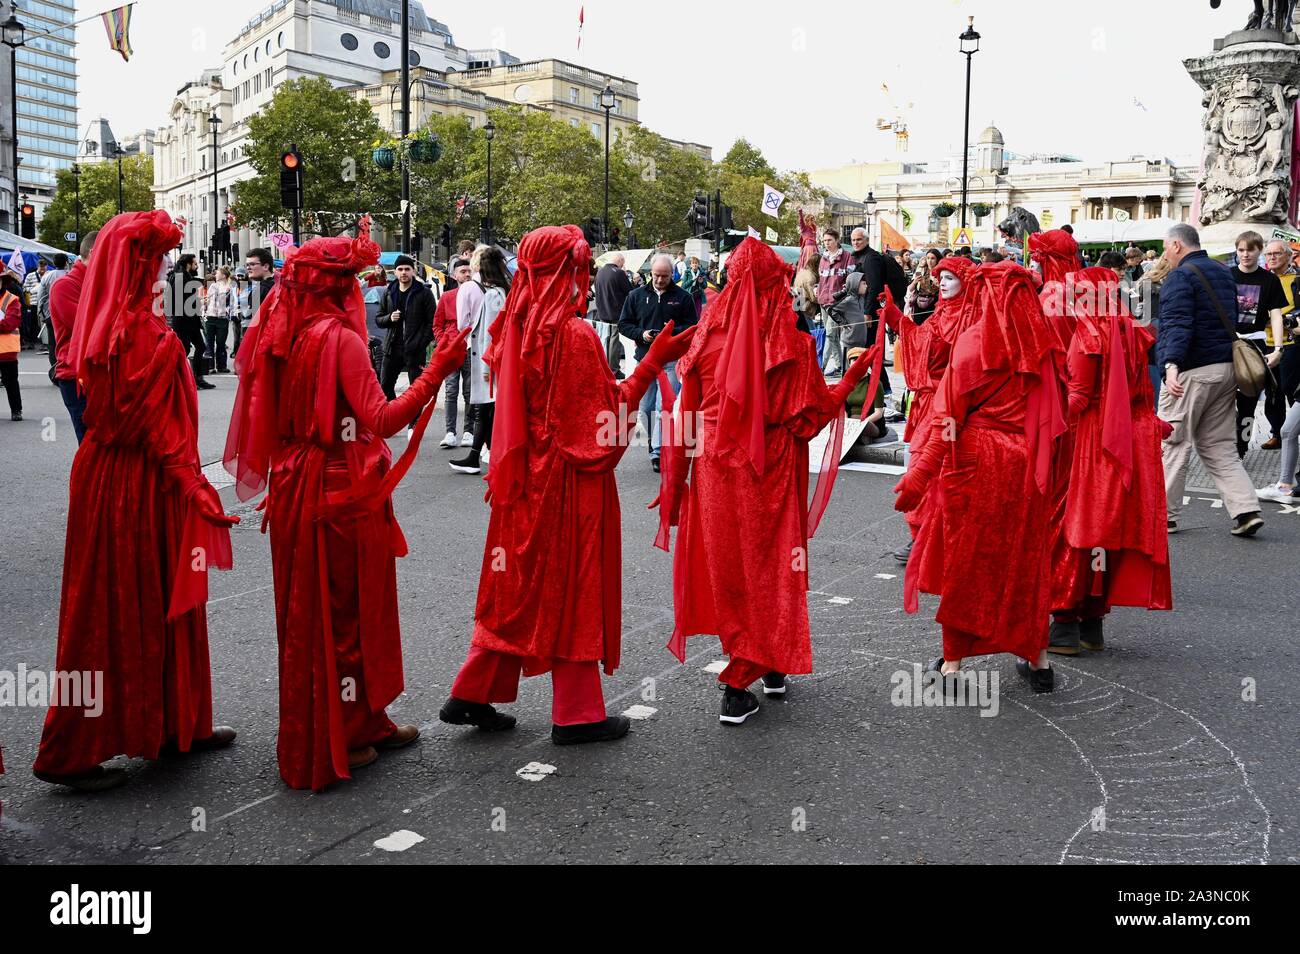 Brigade rouge Performance Group, rébellion Extinction, troisième jour de protestation, Trafalgar Square, Londres. UK Banque D'Images